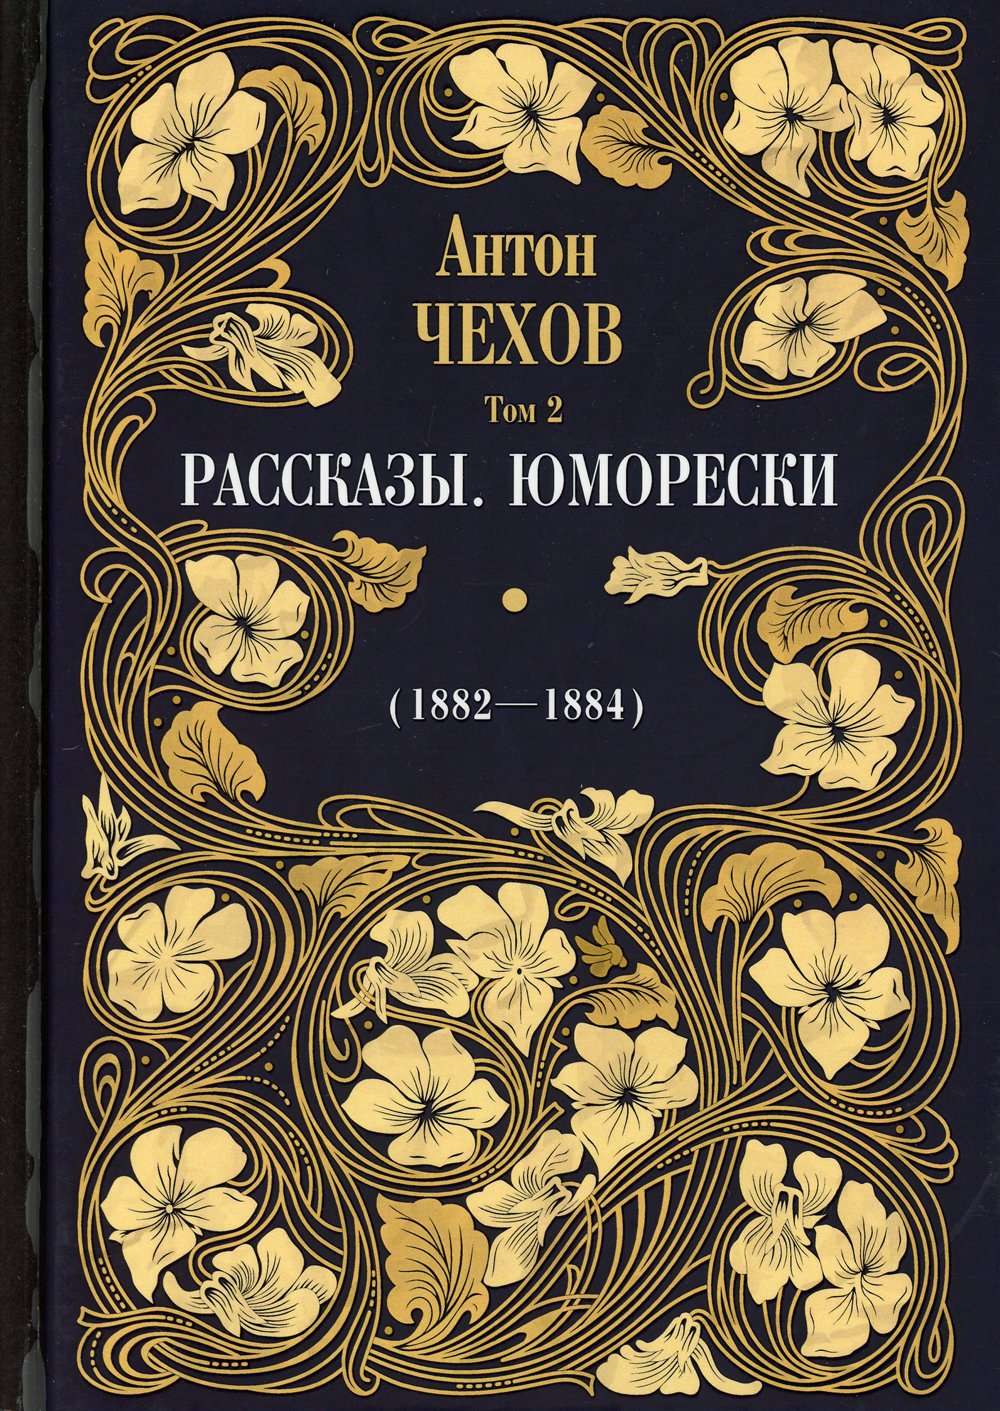 Рассказы. Юморески (1882-1884) - Чехов Антон Павлович